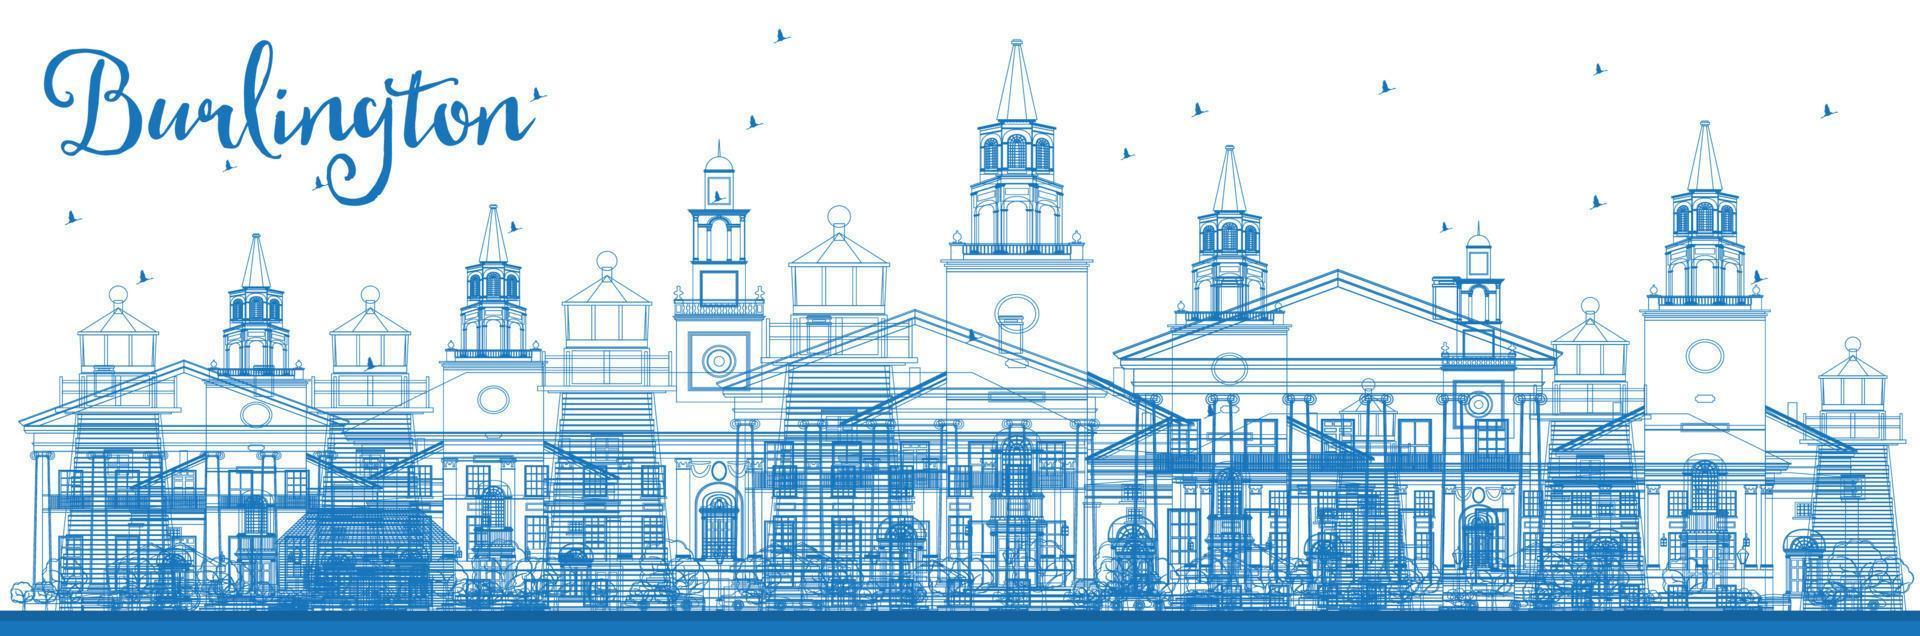 décrire les toits de la ville de burlington vermont avec des bâtiments bleus. vecteur